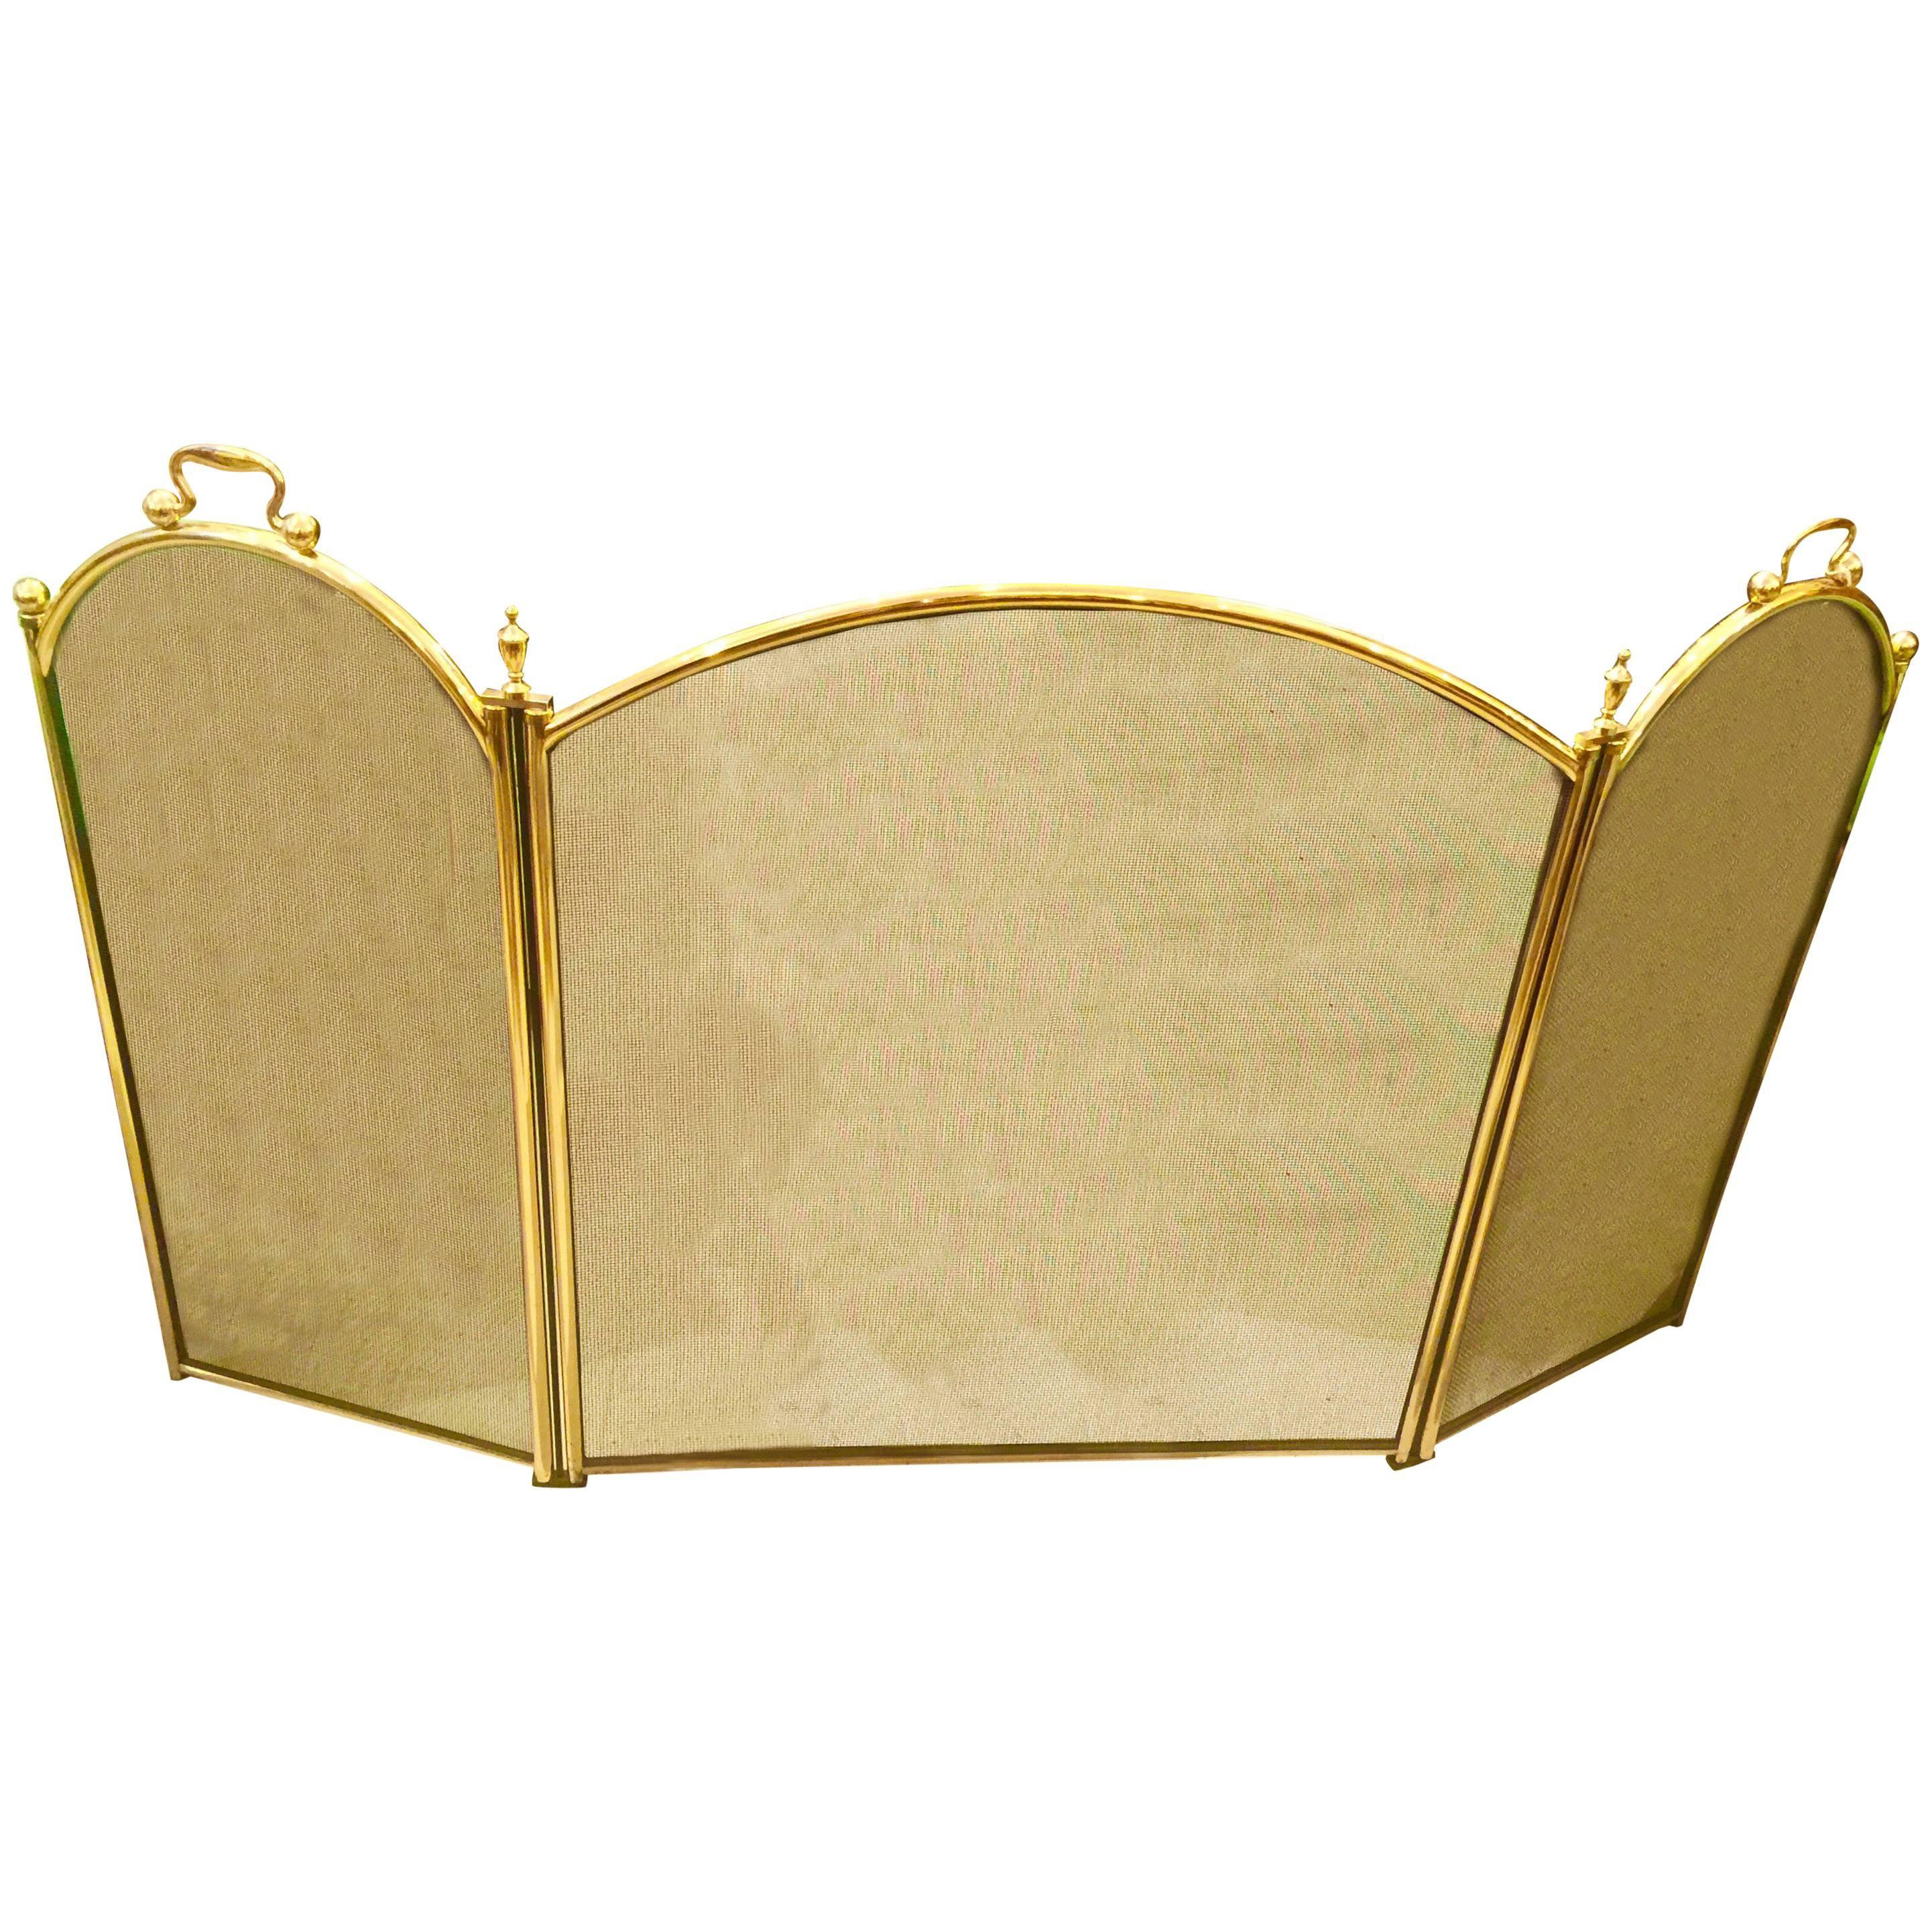 English Brass Regency Style Folding Fire Screen